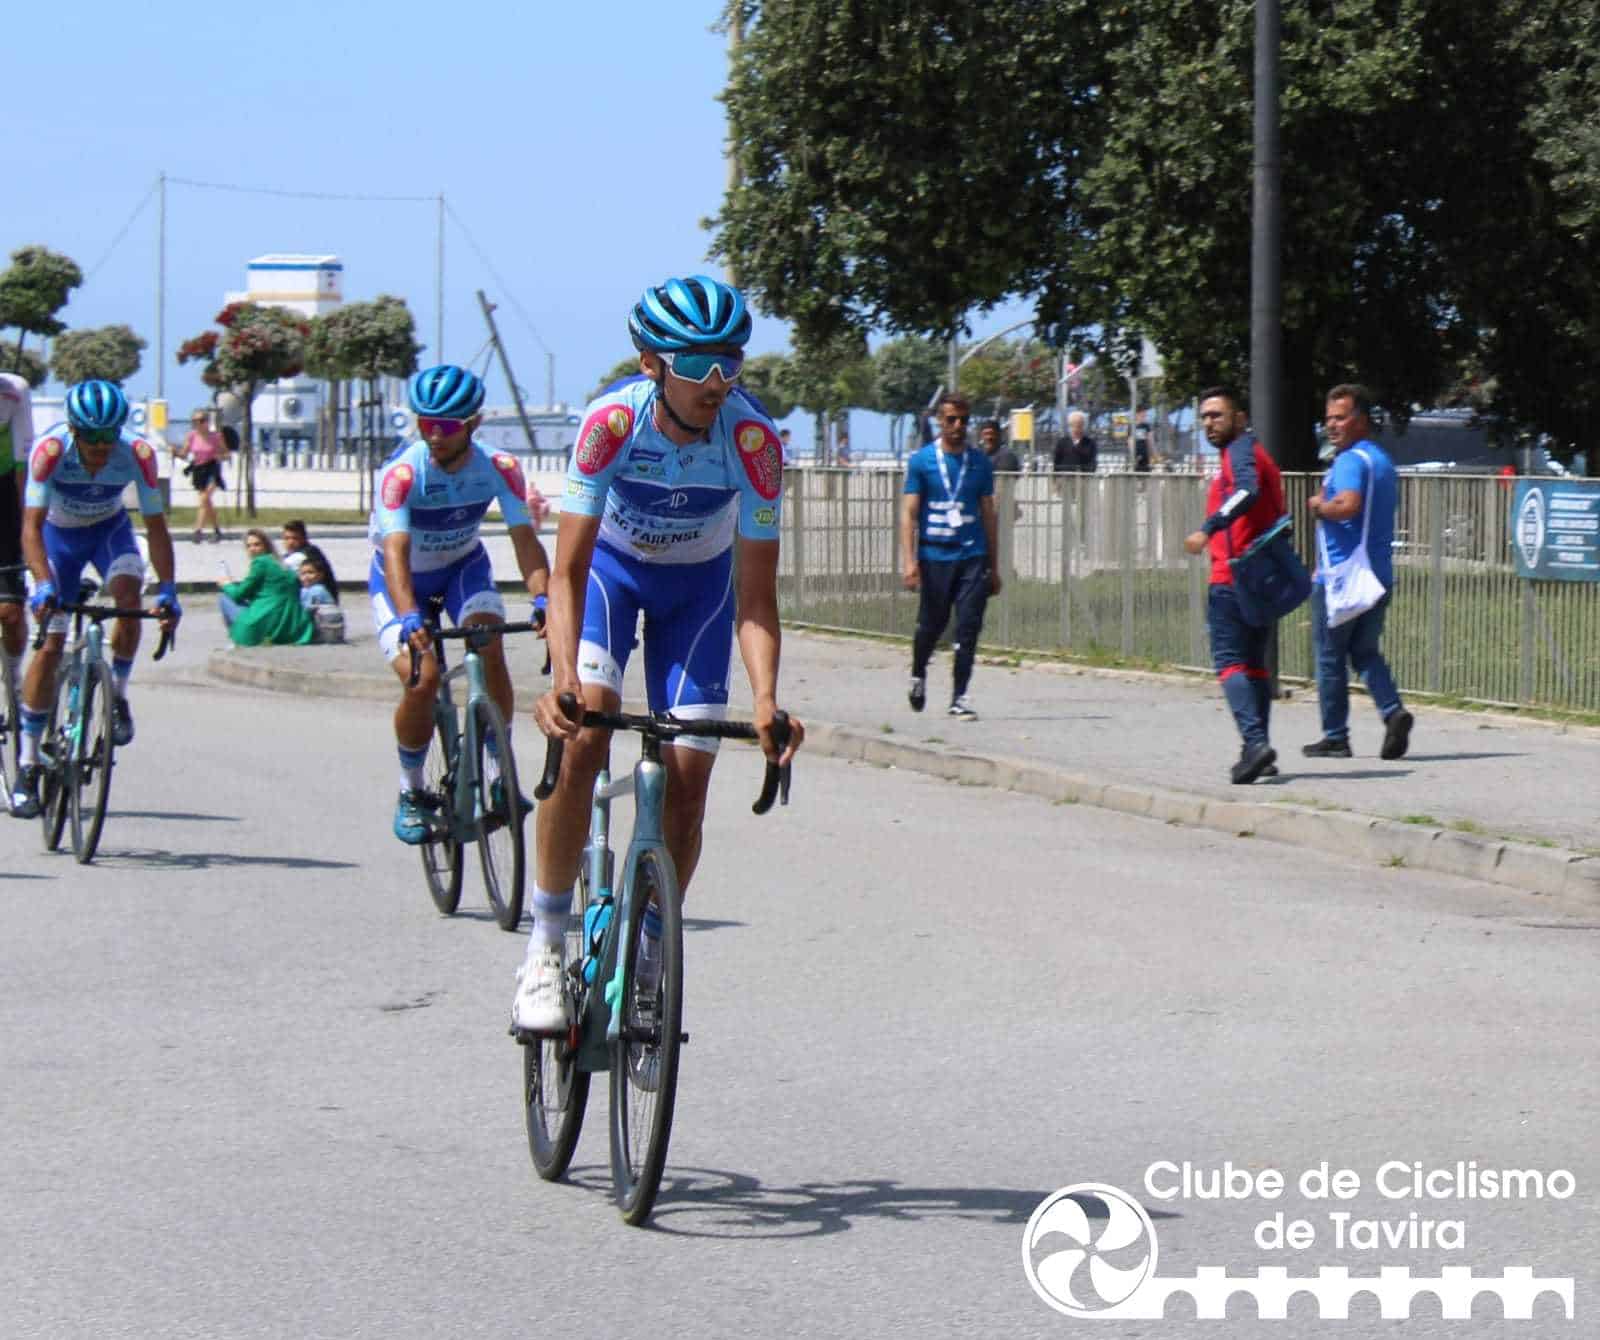 Clube de Ciclismo de Tavira - Classica Viana do Castelo10